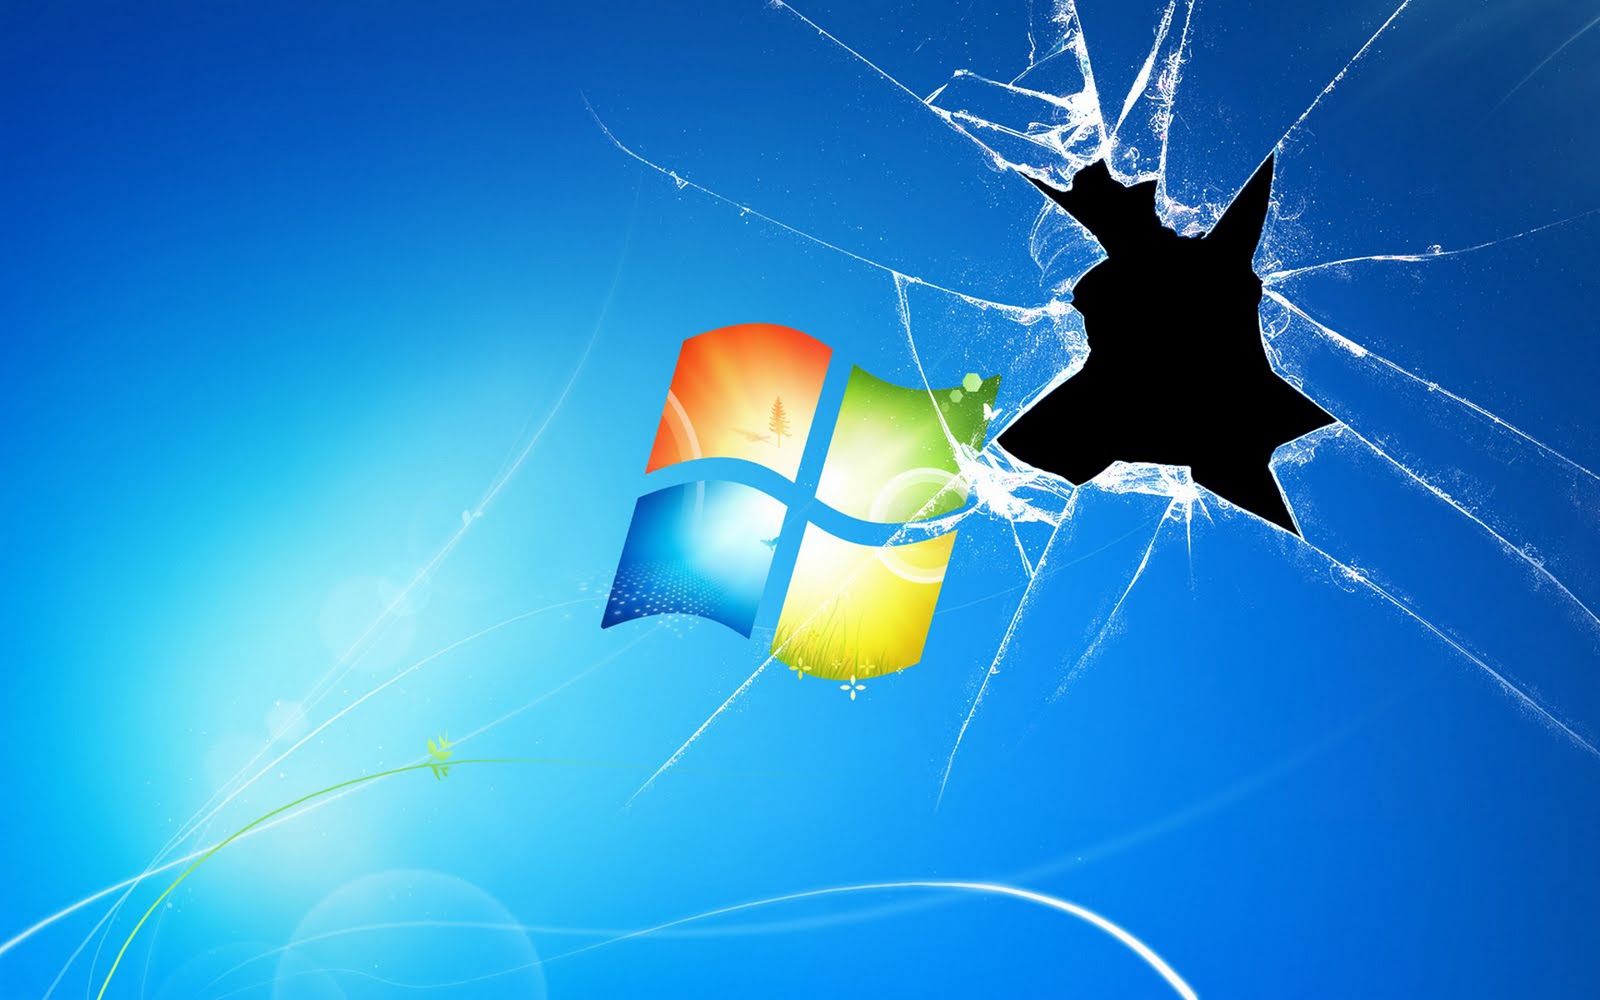 Windows 7 Blue Wallpapers Free Best Desktop Hd Backgrounds